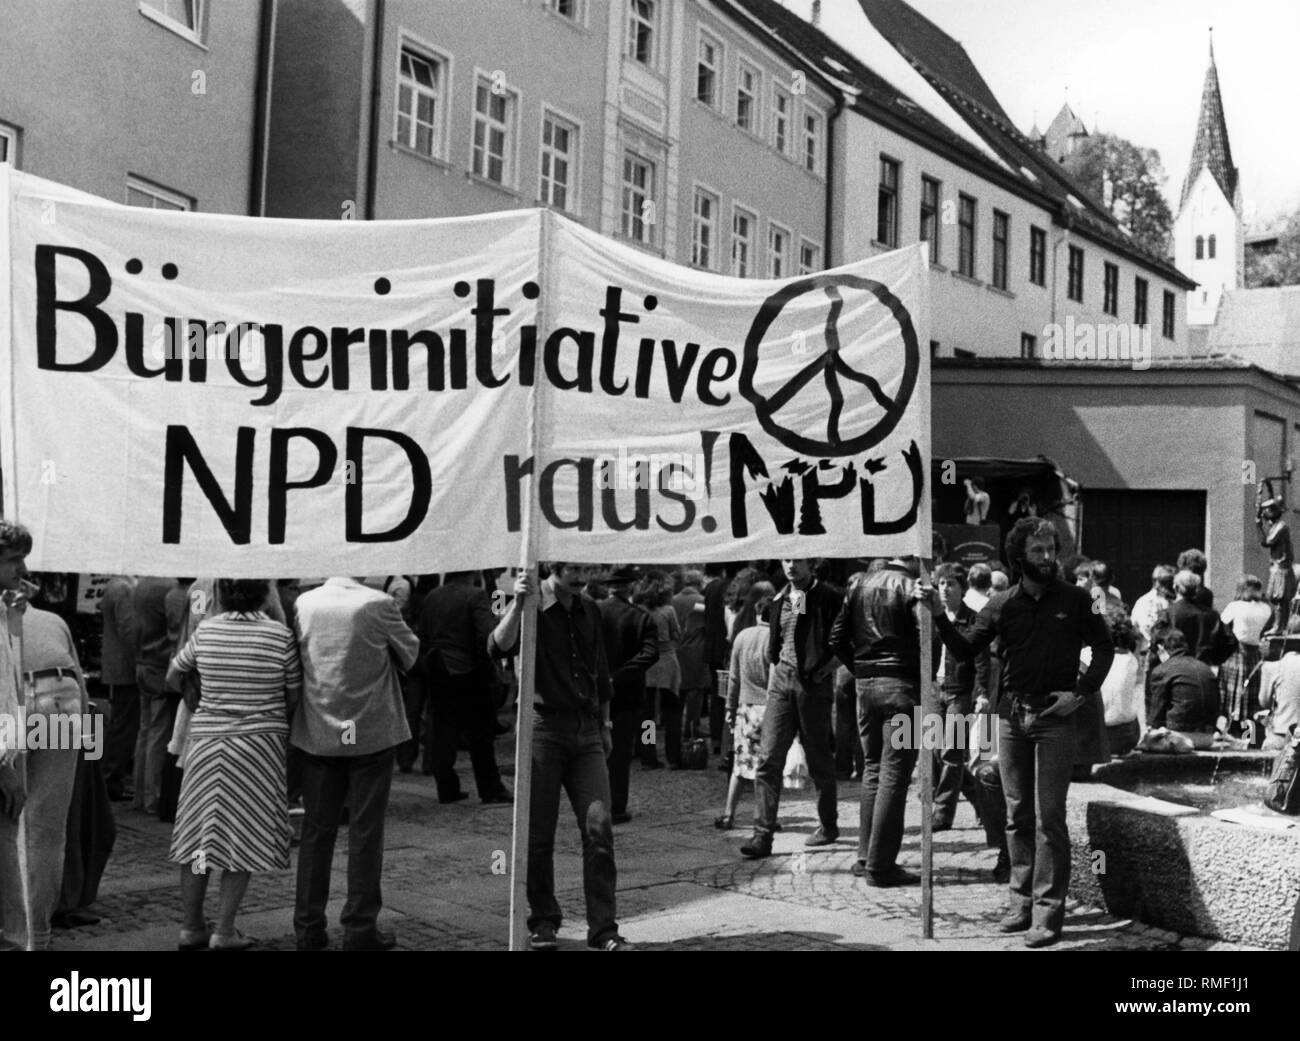 Questa fotografia mostra ai partecipanti in un rally di protesta contro il NPD congresso di partito in Kaufbeuren. Sul banner di accompagnamento stands: 'iniziativa dei cittadini NPD fuori!' Foto Stock